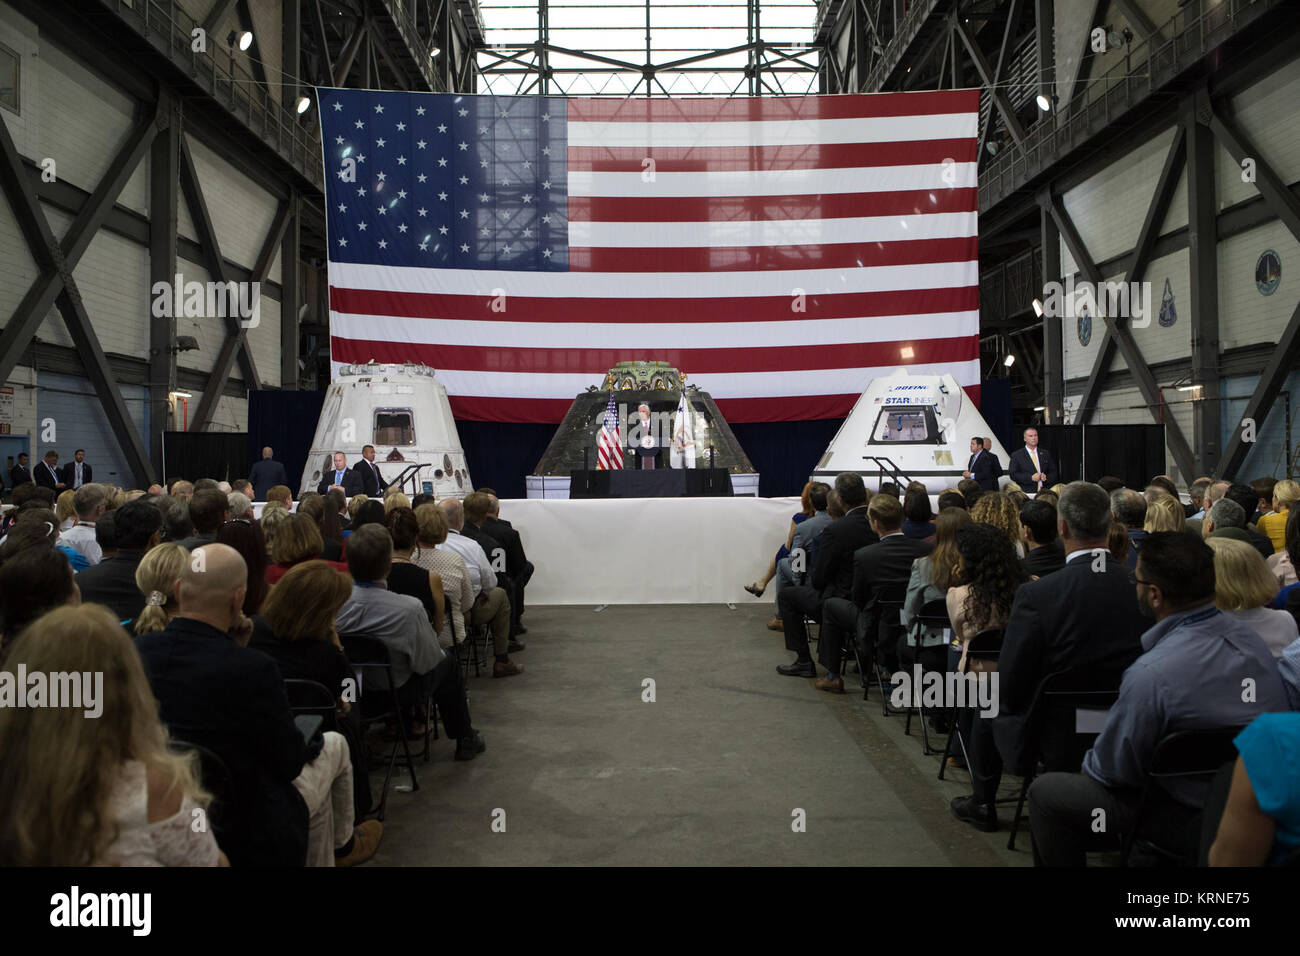 Vice Presidente Mike Pence parla davanti a un pubblico di dirigenti della NASA, gli Stati Uniti e il governo della Florida i funzionari e i dipendenti all'interno del complessivo del veicolo la costruzione presso NASA Kennedy Space Center in Florida. Pence ha ringraziato i dipendenti per far avanzare la leadership americana nello spazio. A ridosso del podio sono, da sinistra, un volato SpaceX Dragon capsula, il veicolo spaziale Orion volato su Esplorazione prova di volo-1 nel 2014, e un mockup del Boeing CST-100 Starliner. Durante la sua visita a Kennedy, il Vice Presidente ha anche visitato diverse strutture evidenziando i partenariati pubblico-privato, in quanto sia la NASA e commerciale Foto Stock